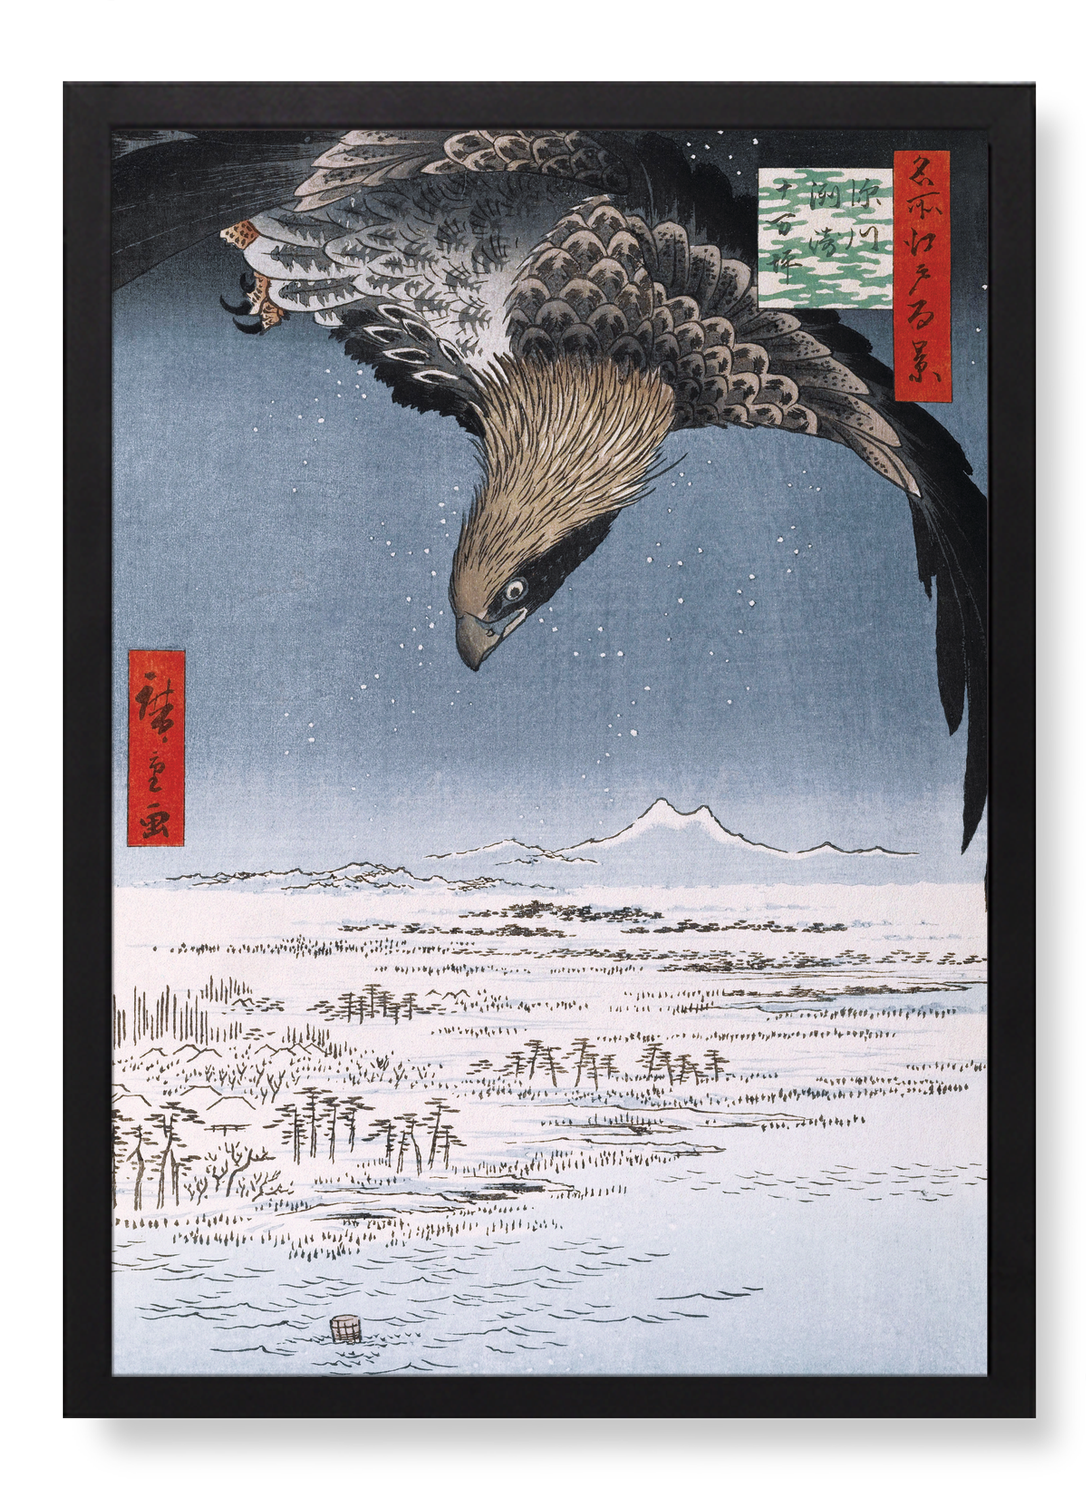 FUKAGAWA SUSAKI AND JUMANTSUBO (1857)